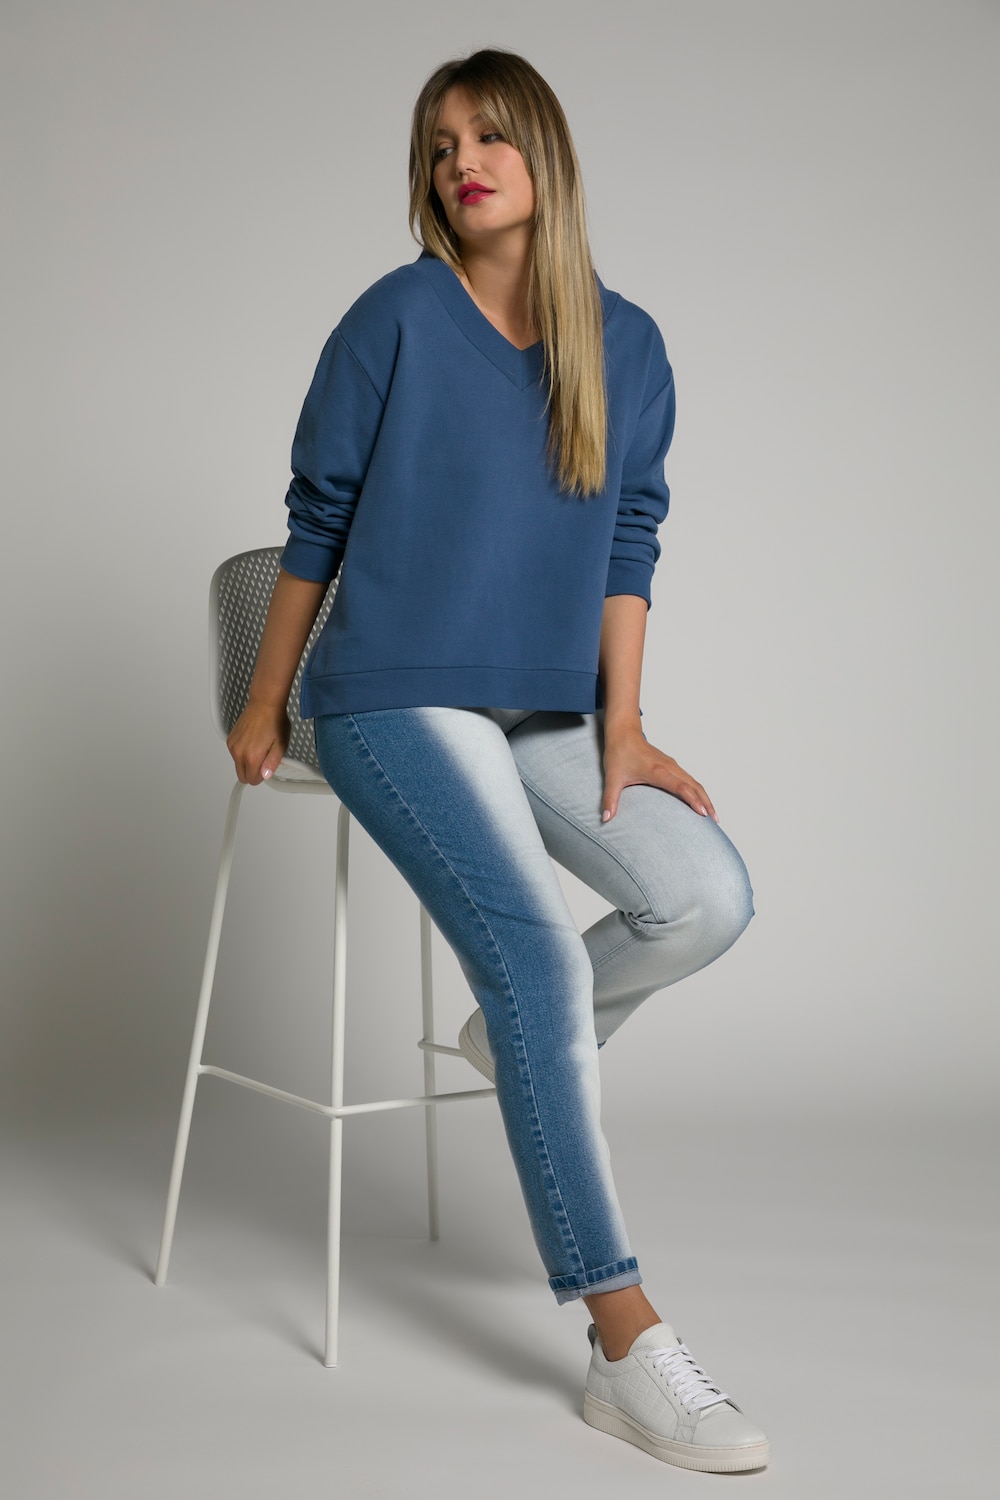 Grote Maten jeans Sarah, Dames, blauw, Maat: 62, Katoen, Ulla Popken